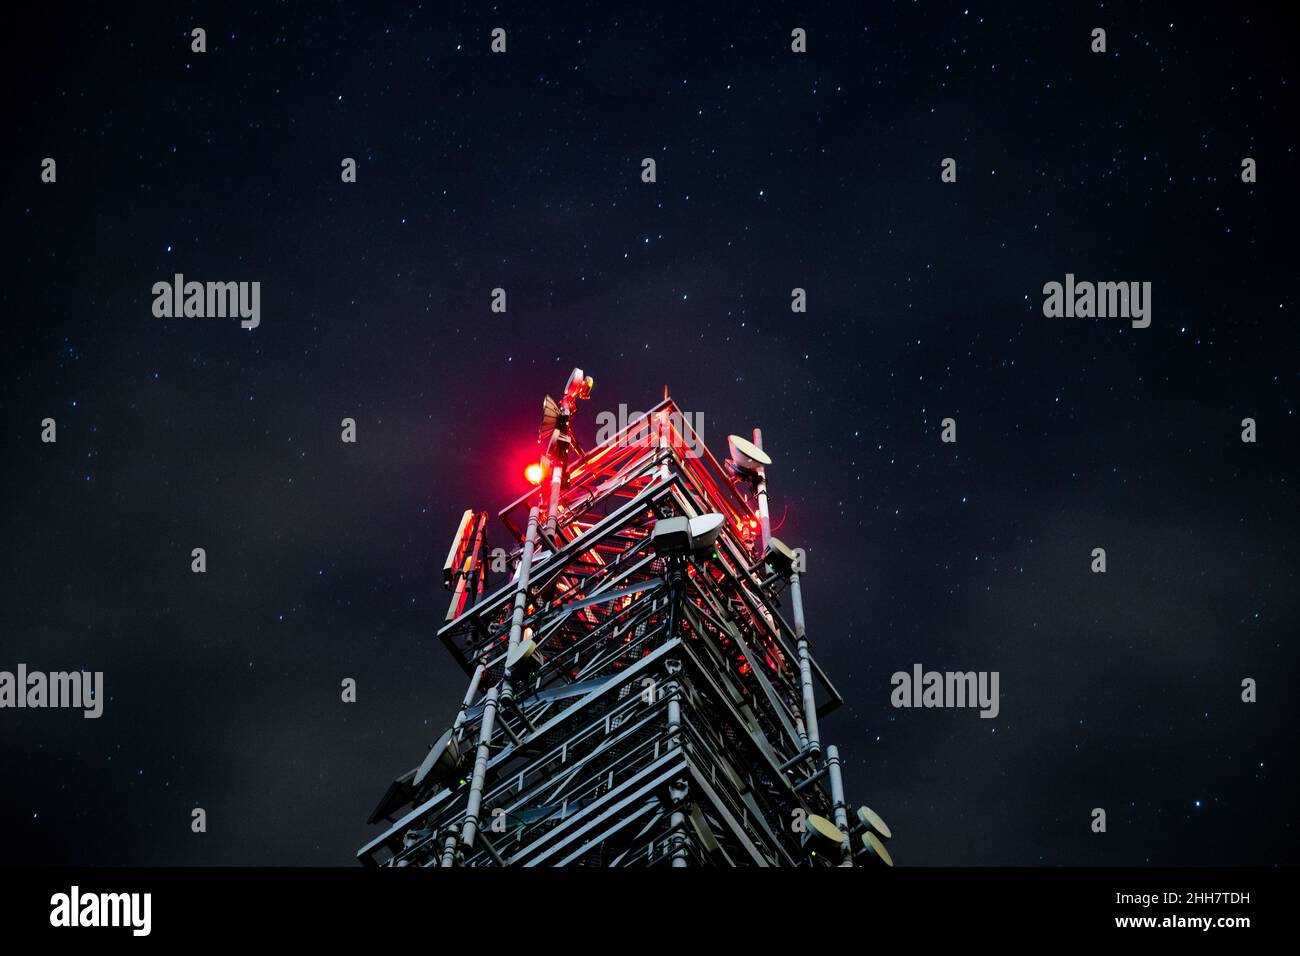 Turm für mobile Kommunikationssysteme 4G und 5G auf dem Hintergrund des Sternenhimmels. Basisstation nachts Stockfoto